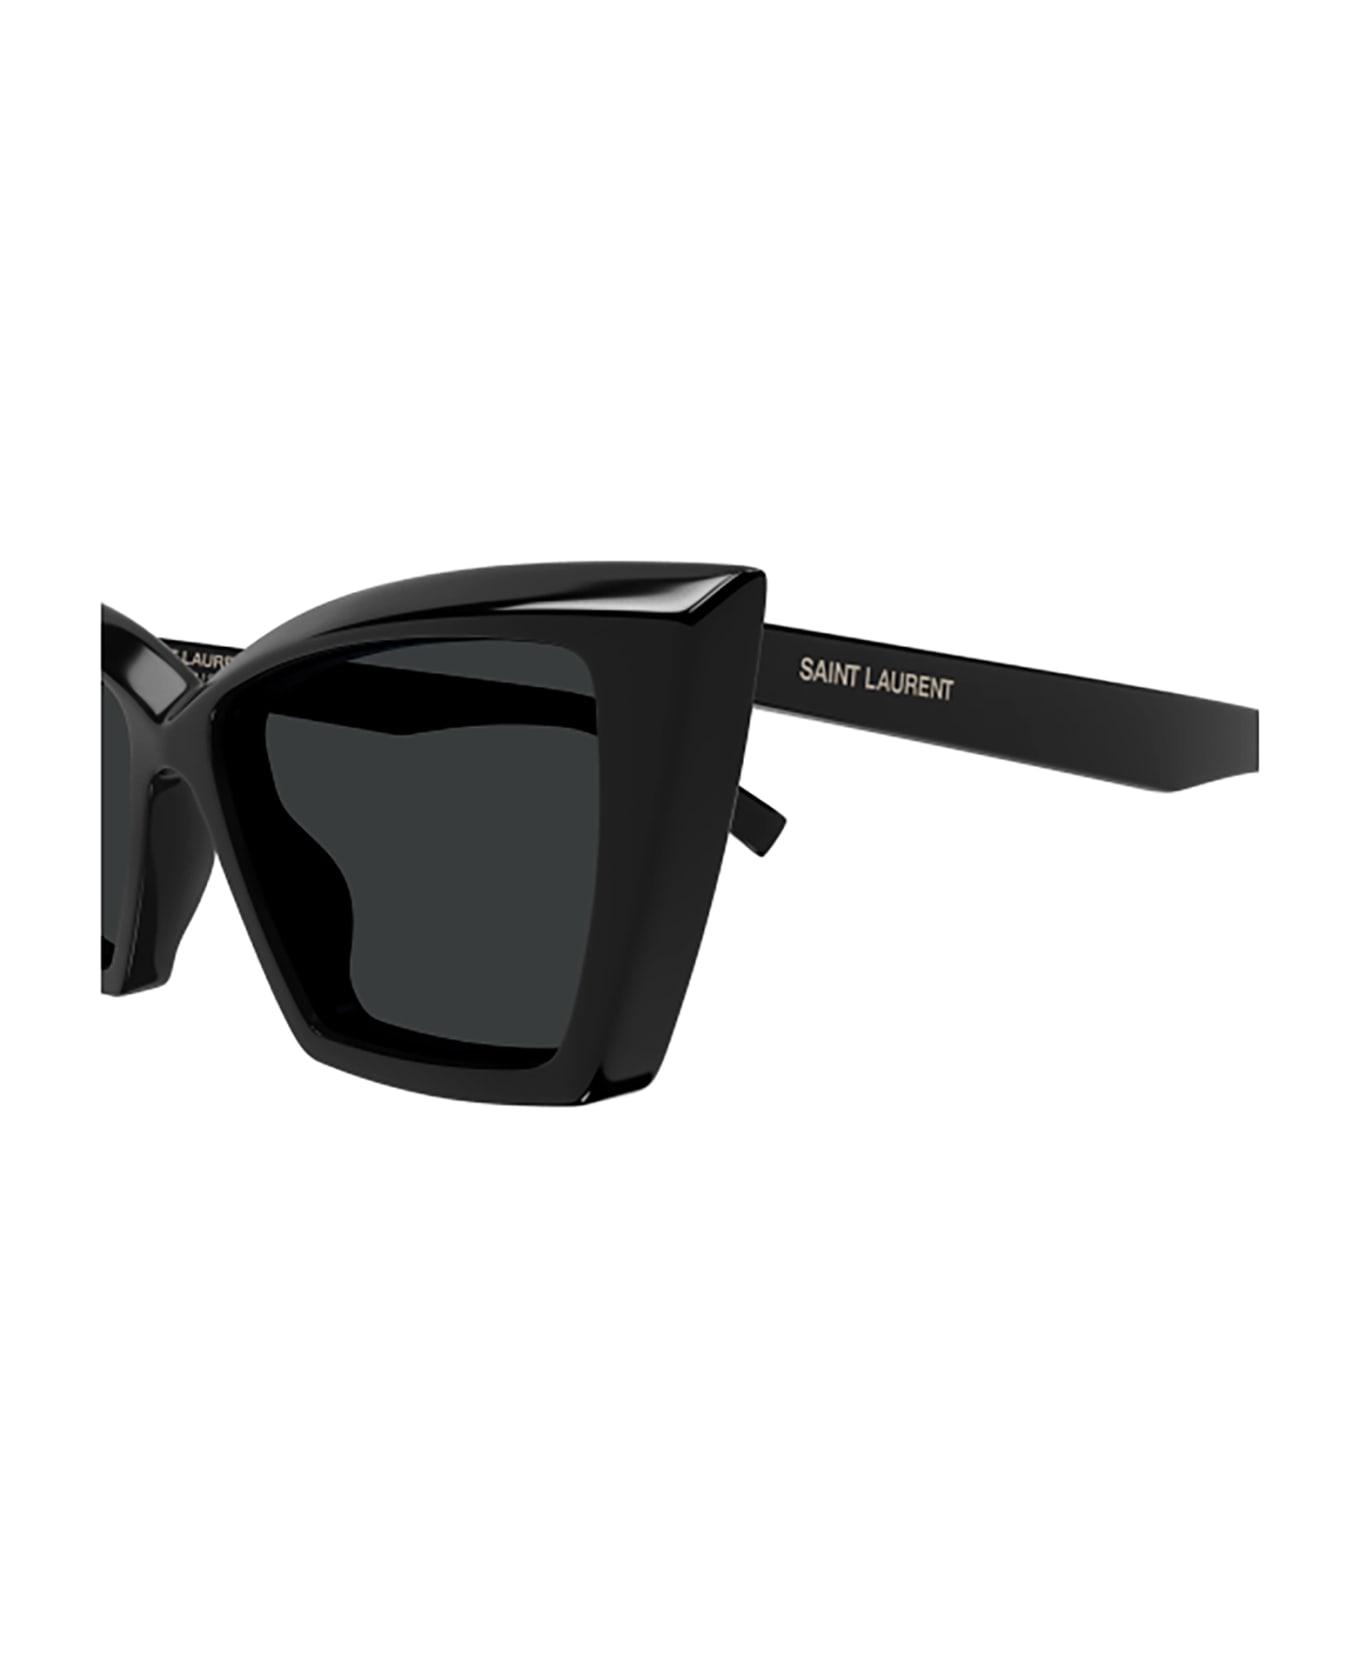 Saint Laurent Eyewear Sl 657 Sunglasses - 001 black black black サングラス